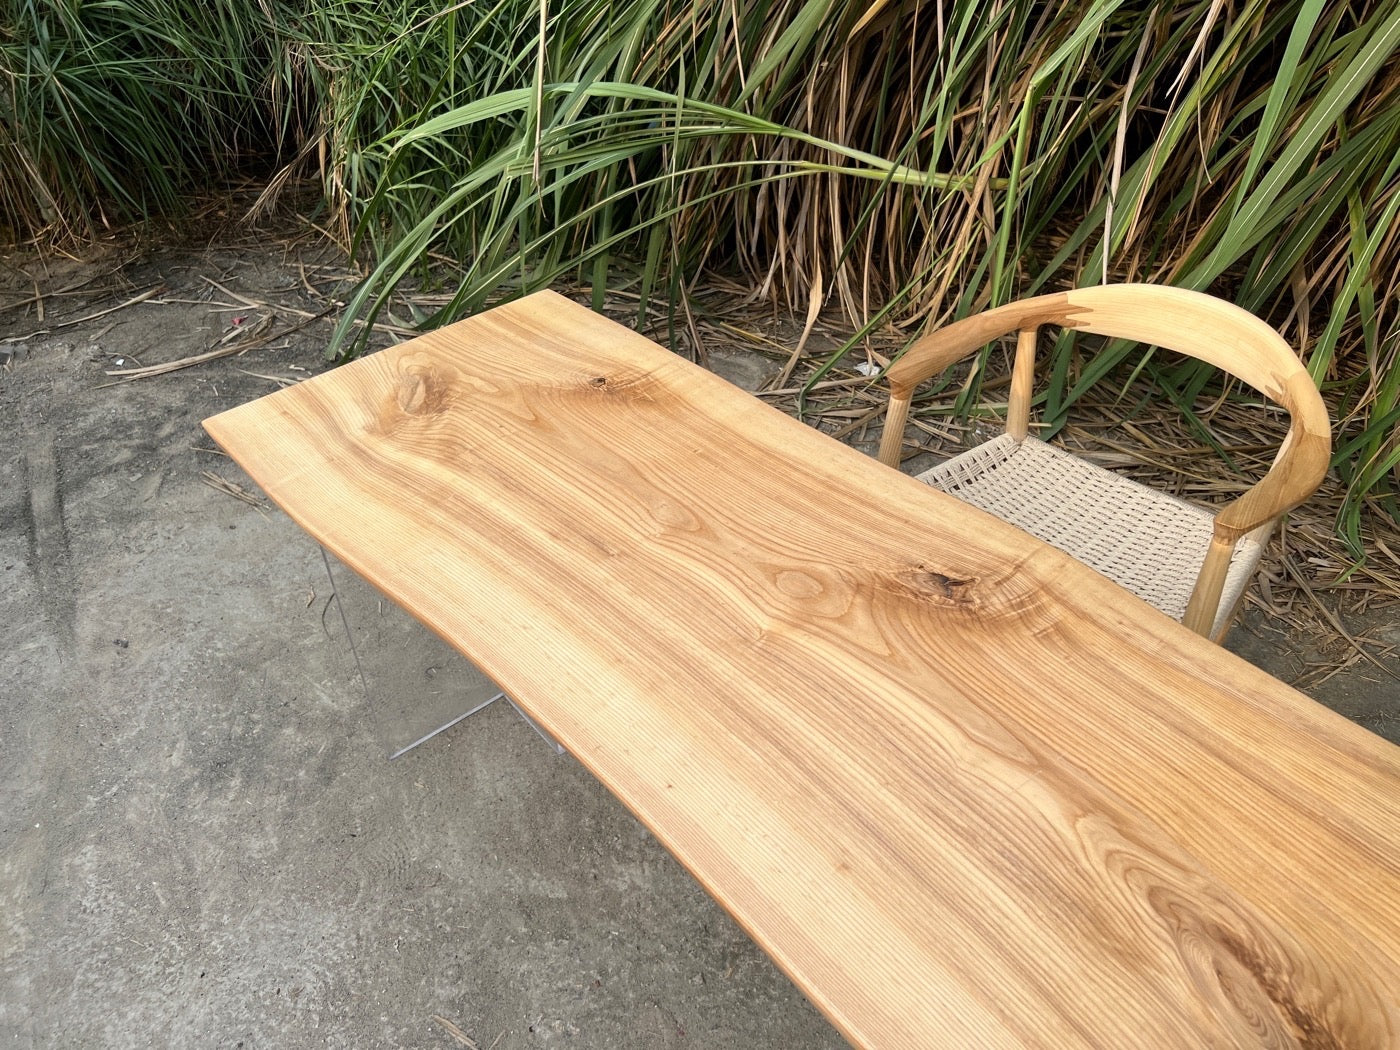 losa de mesa redonda de borde vivo, mesa de borde vivo de madera de América del Norte, mesa de centro de madera de fresno